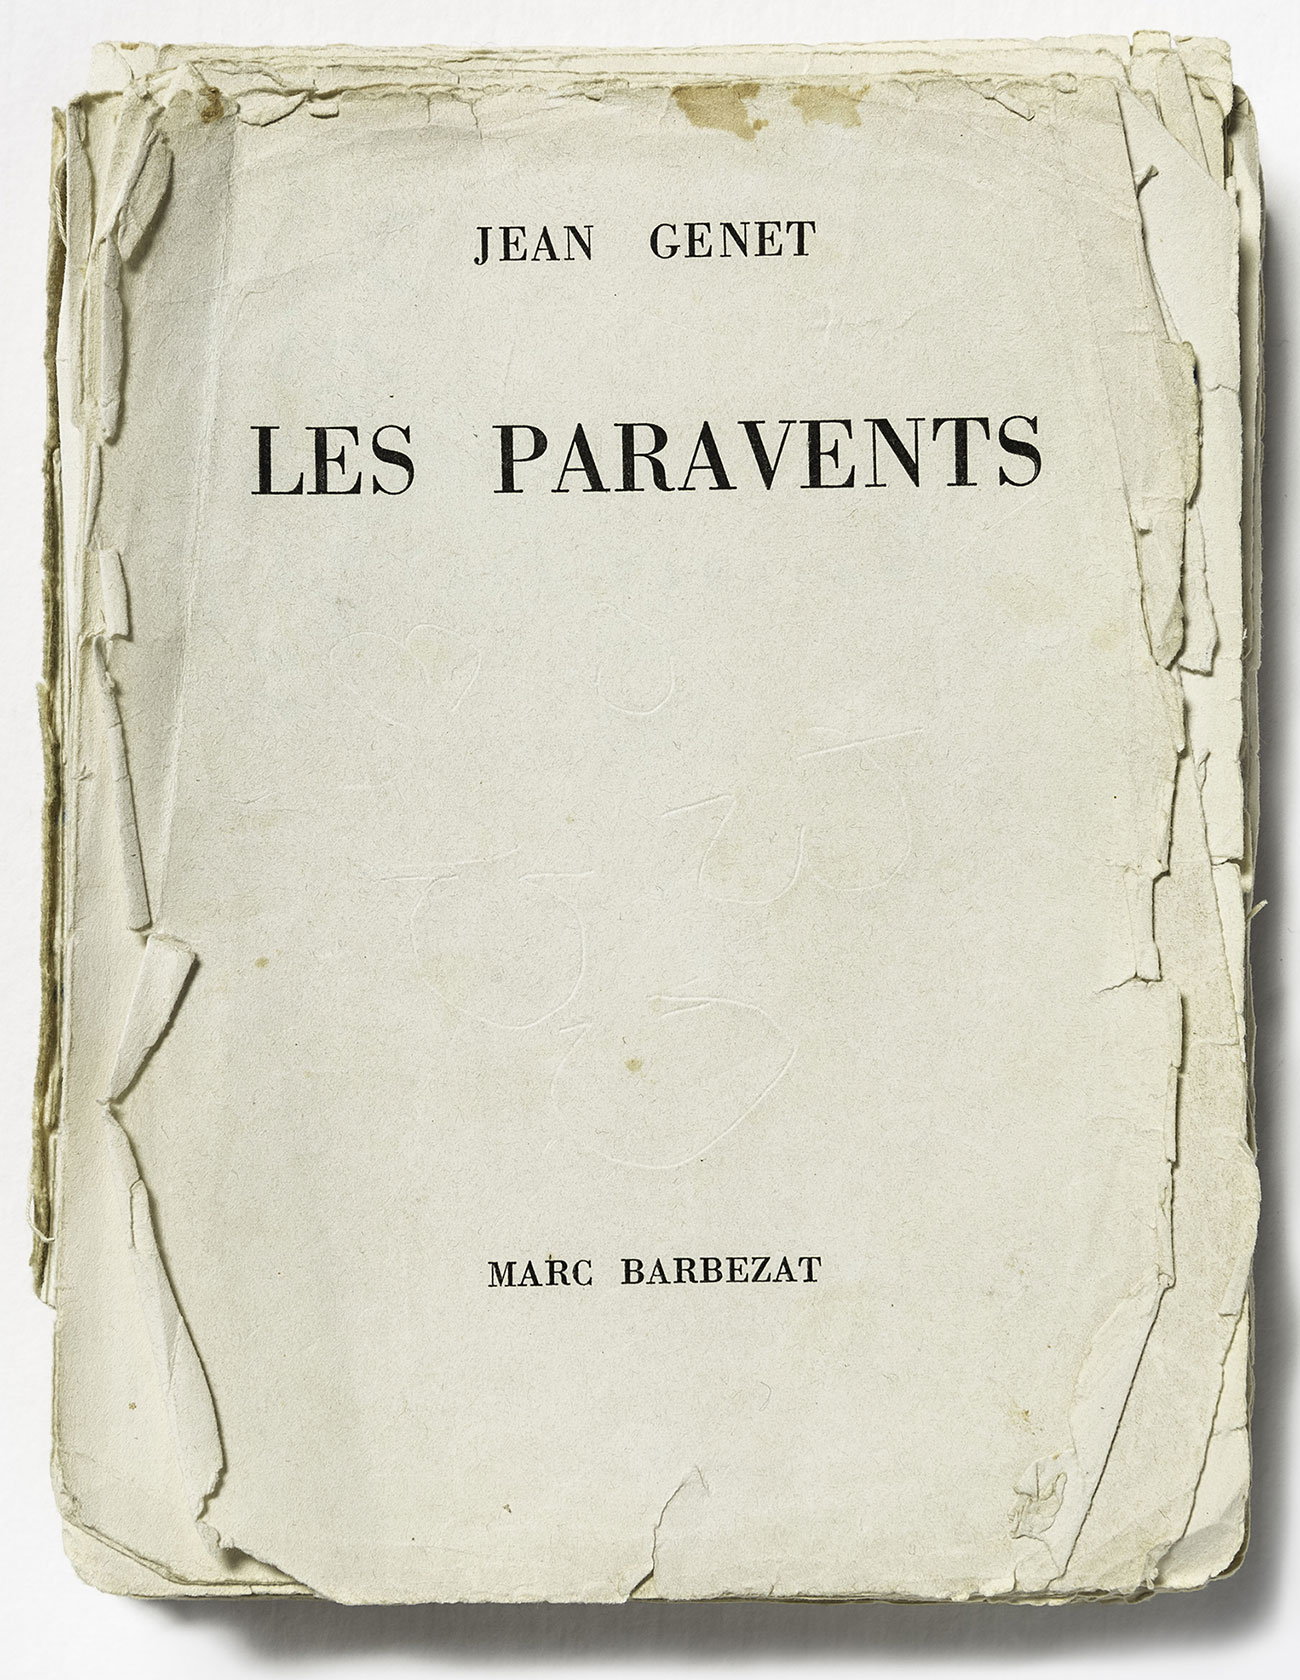 Les-paravents-ed-originale-1961-©-fonds-Jean-Genet-imec-Photo-Michael-Quemener